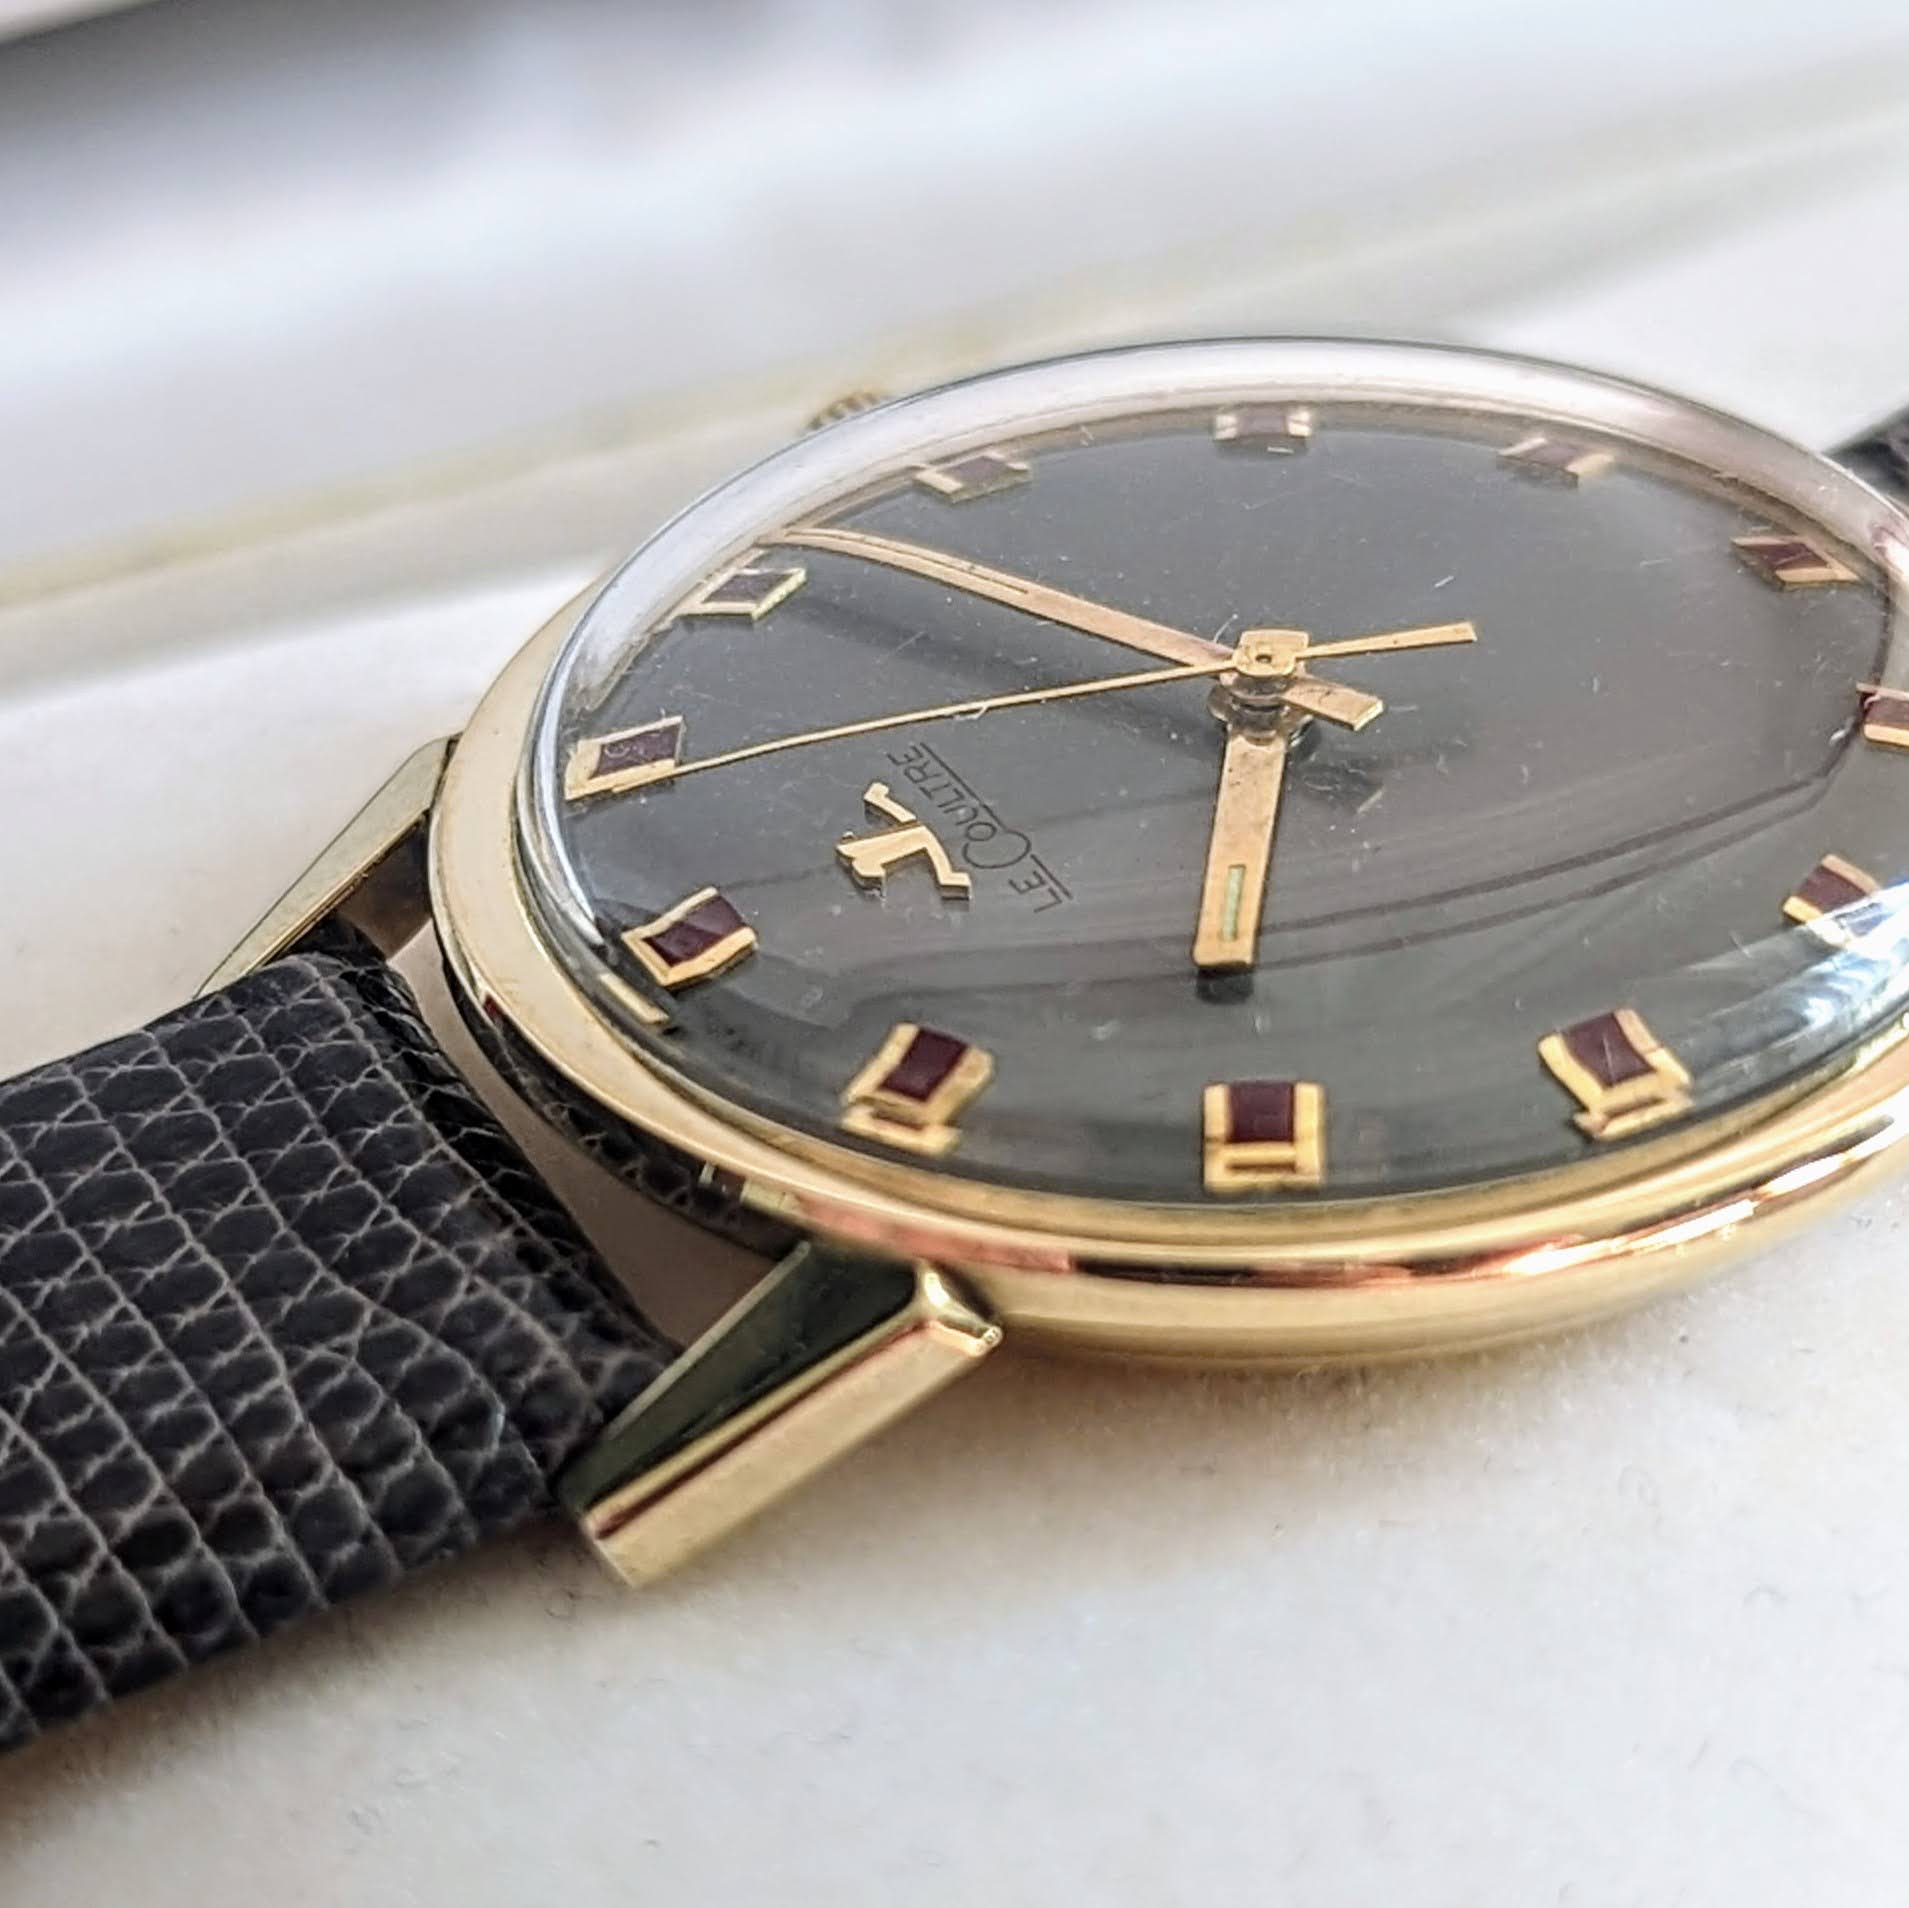 1965 LeCoultre Watch Cal. K830/CW 17 Jewels 10K GF Vintage Wristwatch